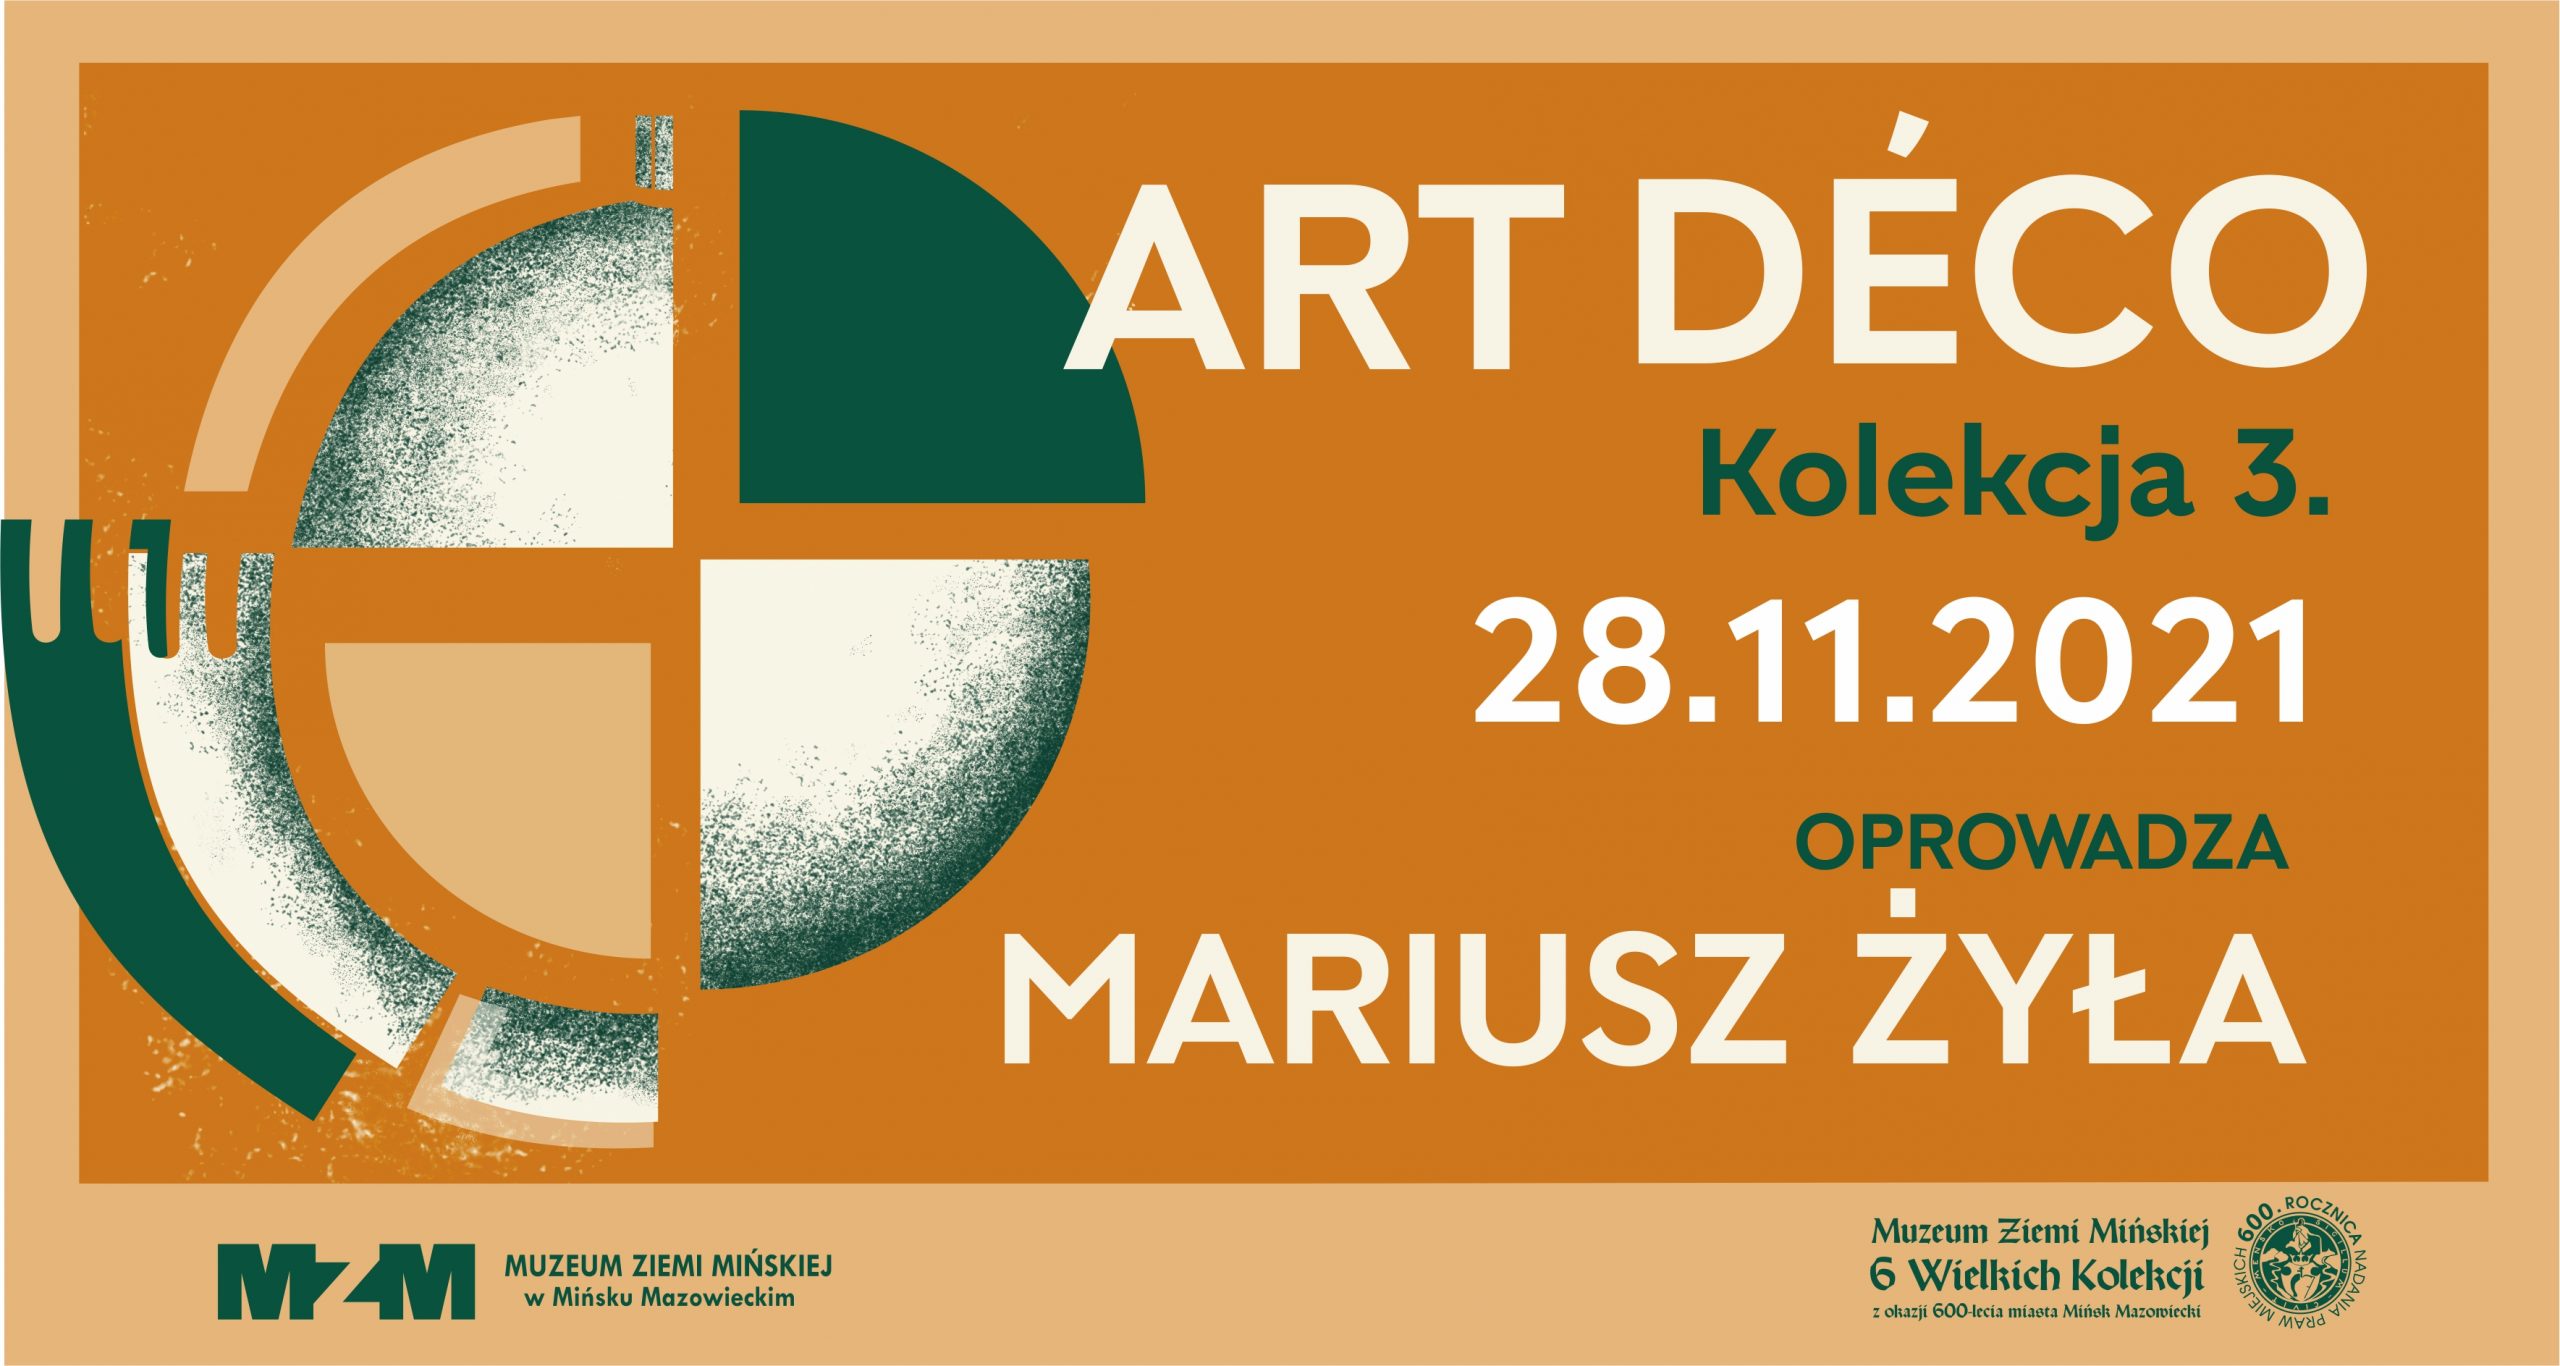 Art déco – oprowadza Mariusz Żyła